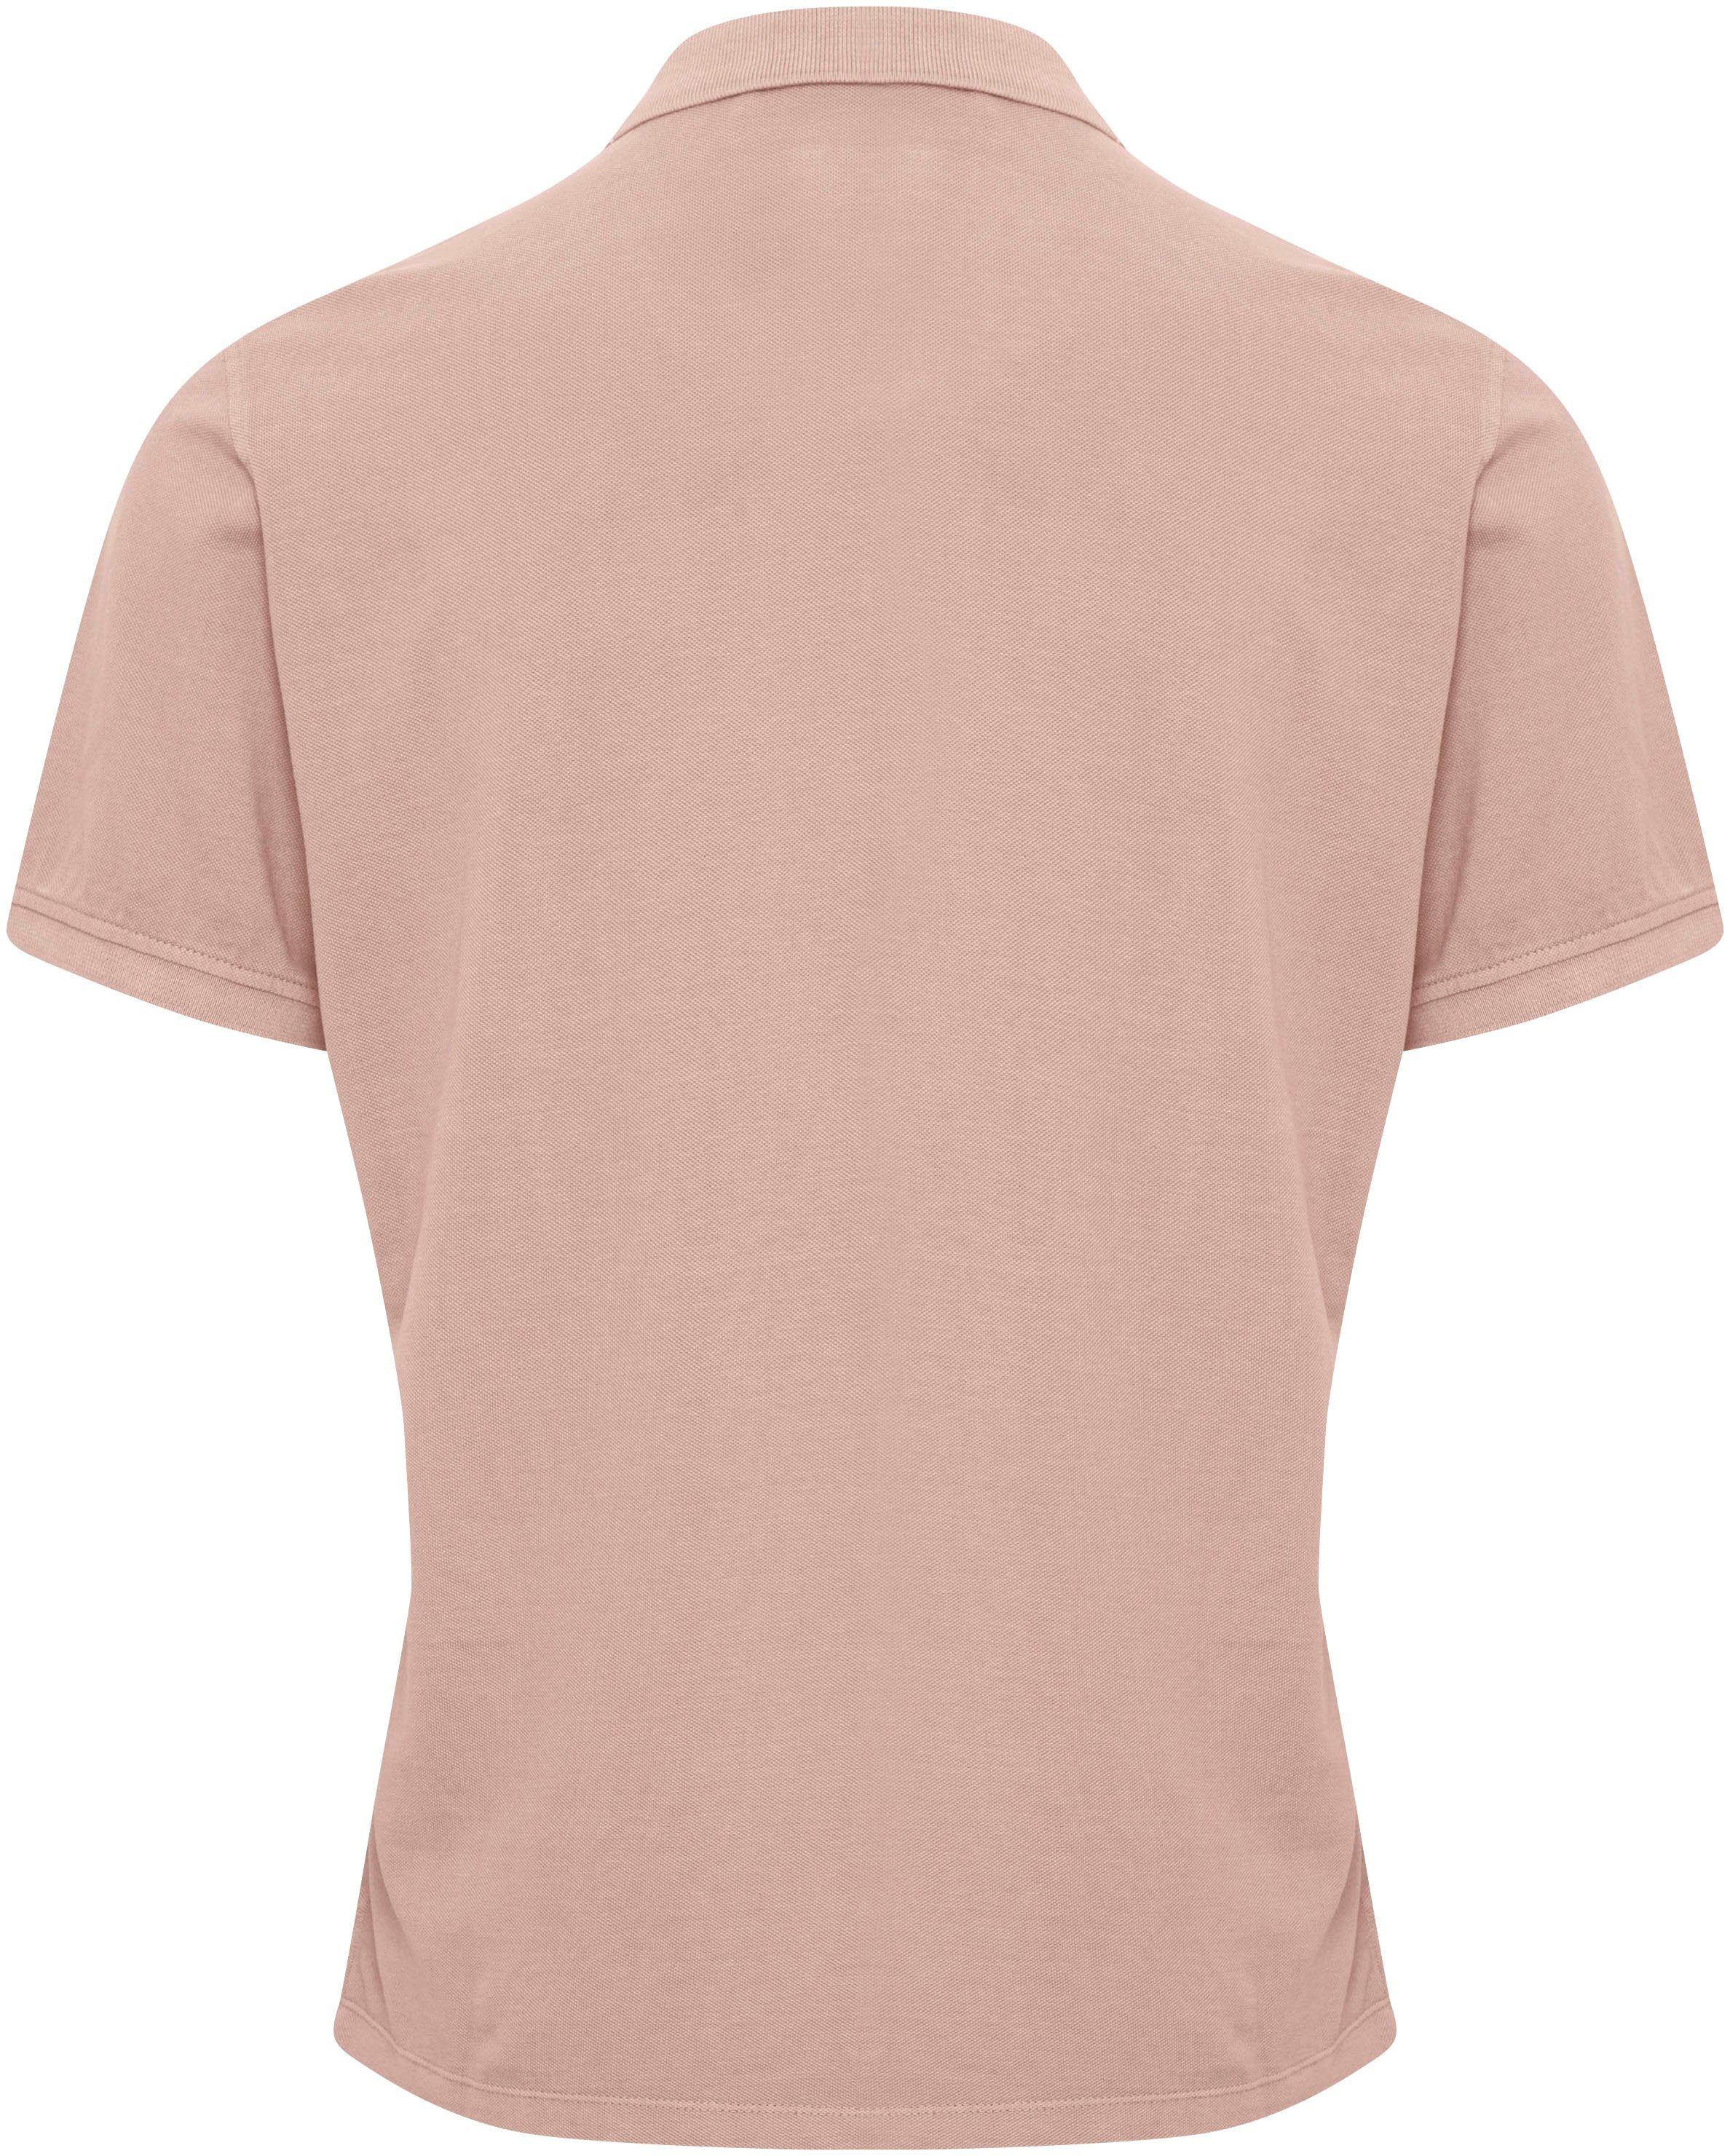 Blend Poloshirt pink BL-Poloshirt